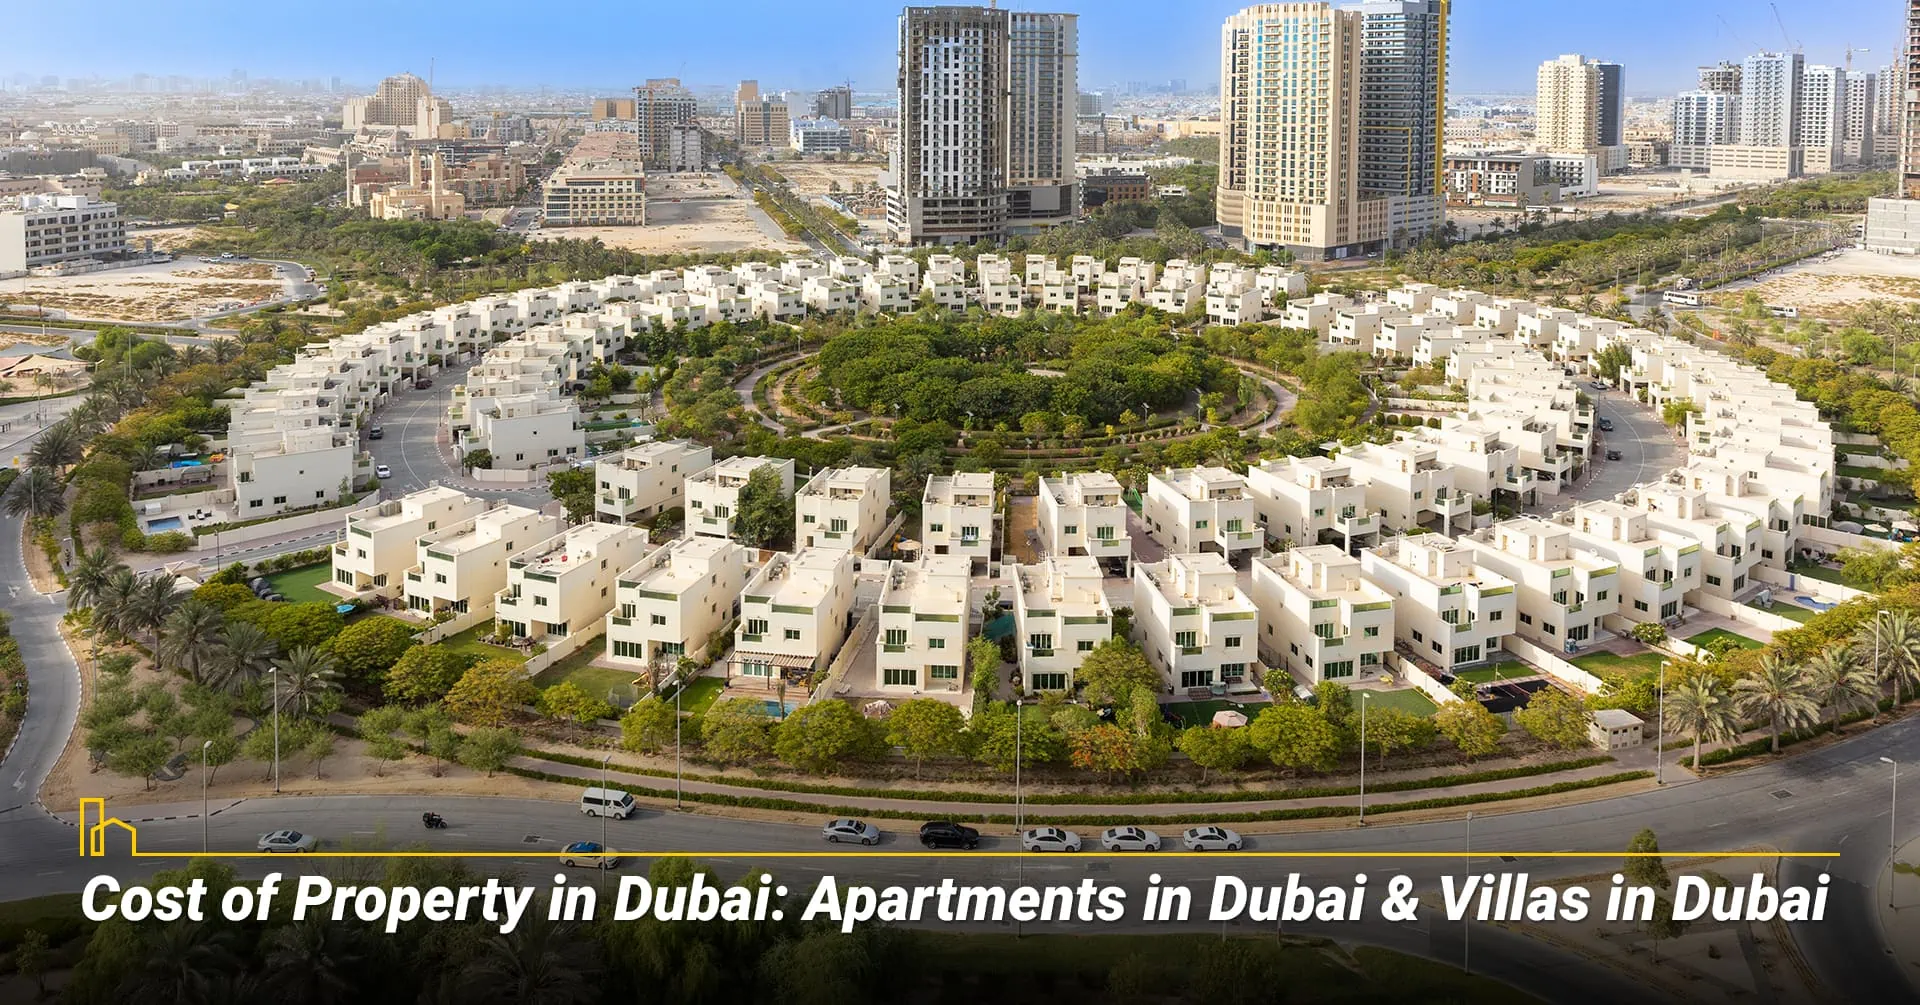 Cost of Property in Dubai: Apartments in Dubai & Villas in Dubai